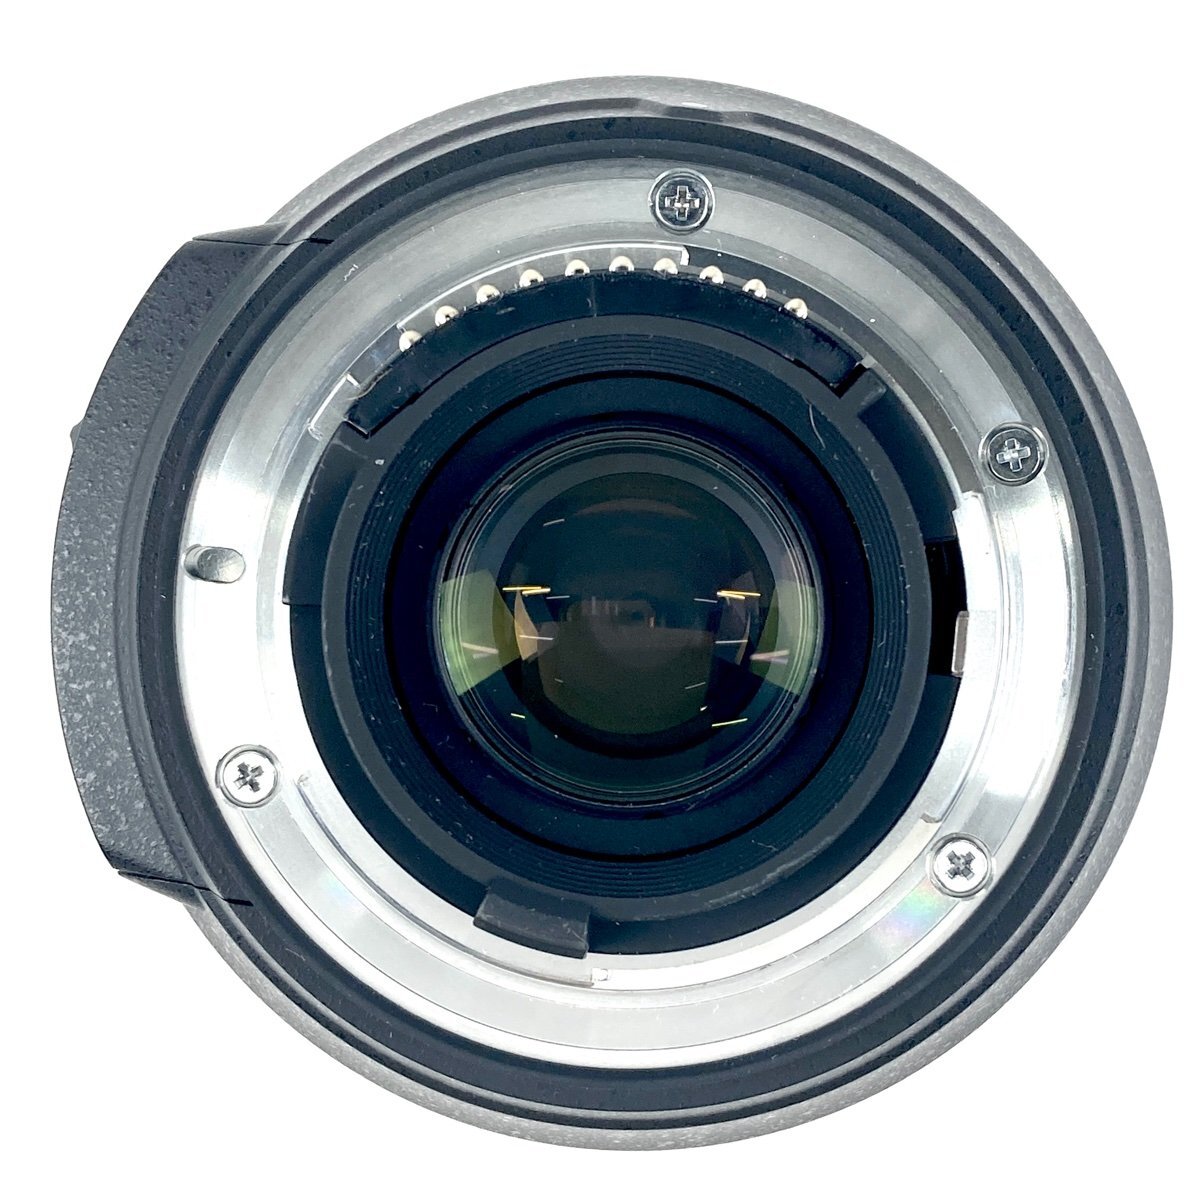 ニコン Nikon D7100 + AF-S DX NIKKOR 18-200mm F3.5-5.6G ED VR デジタル 一眼レフカメラ 【中古】_バイセル 31051_8